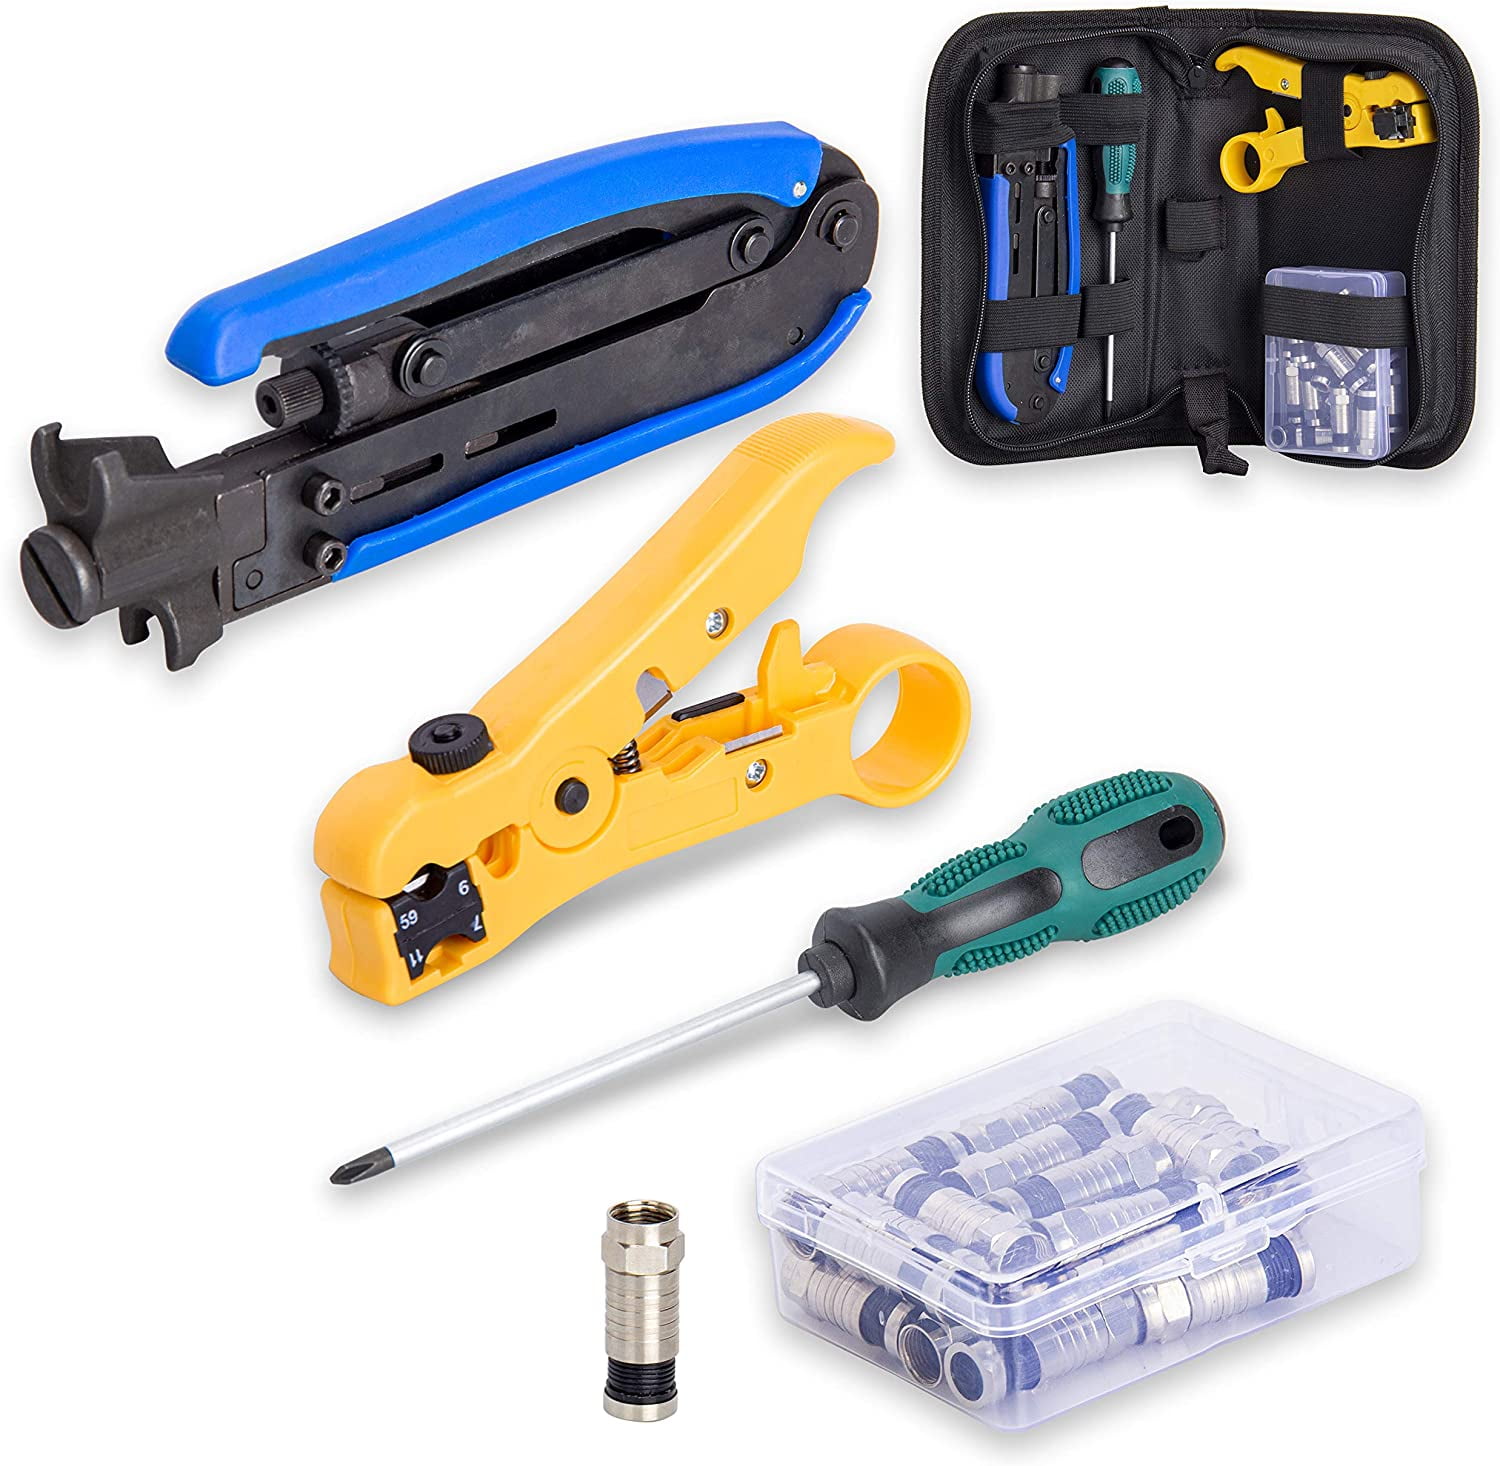 Preciva Coax Cable Crimper Coaxial Cable Compression Tool Kit with Crimp Tool, 